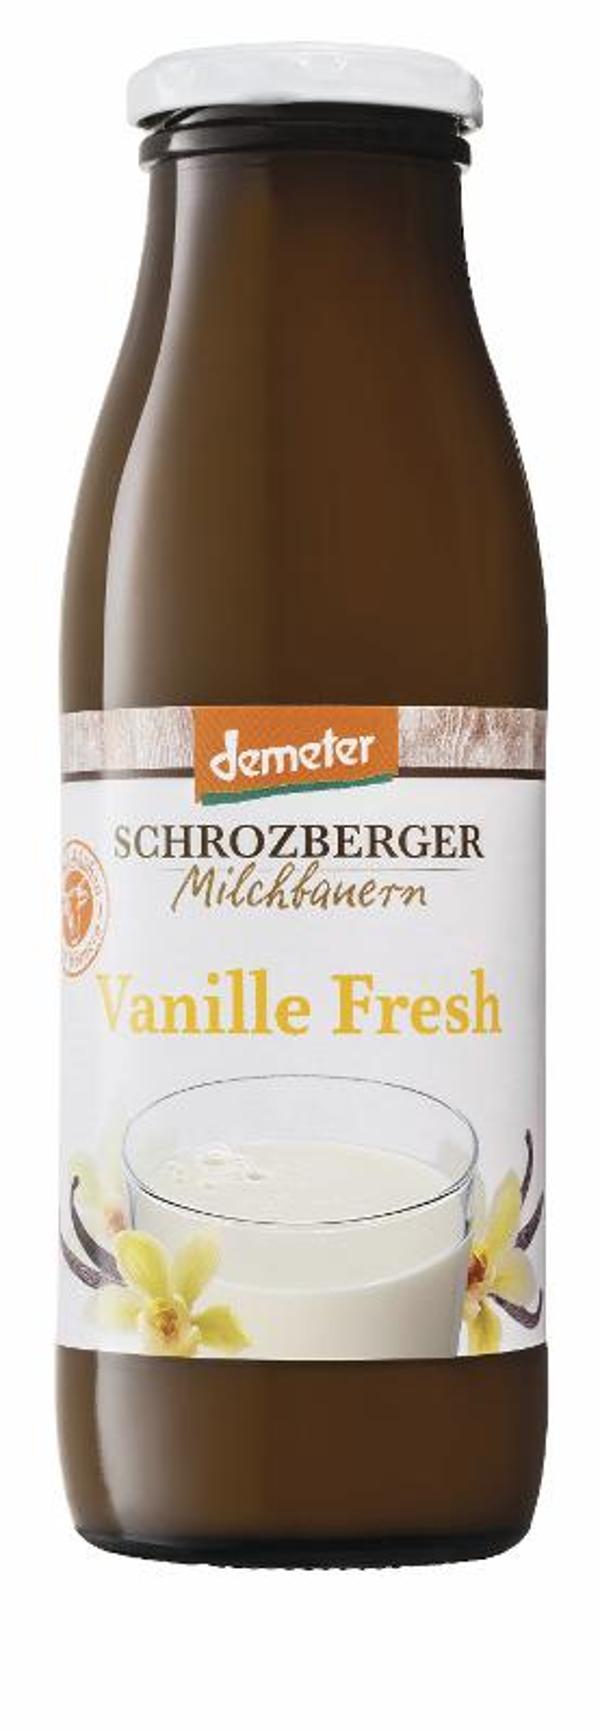 Produktfoto zu Vanille-Fresh, 3,8%, 0,5 Ltr.